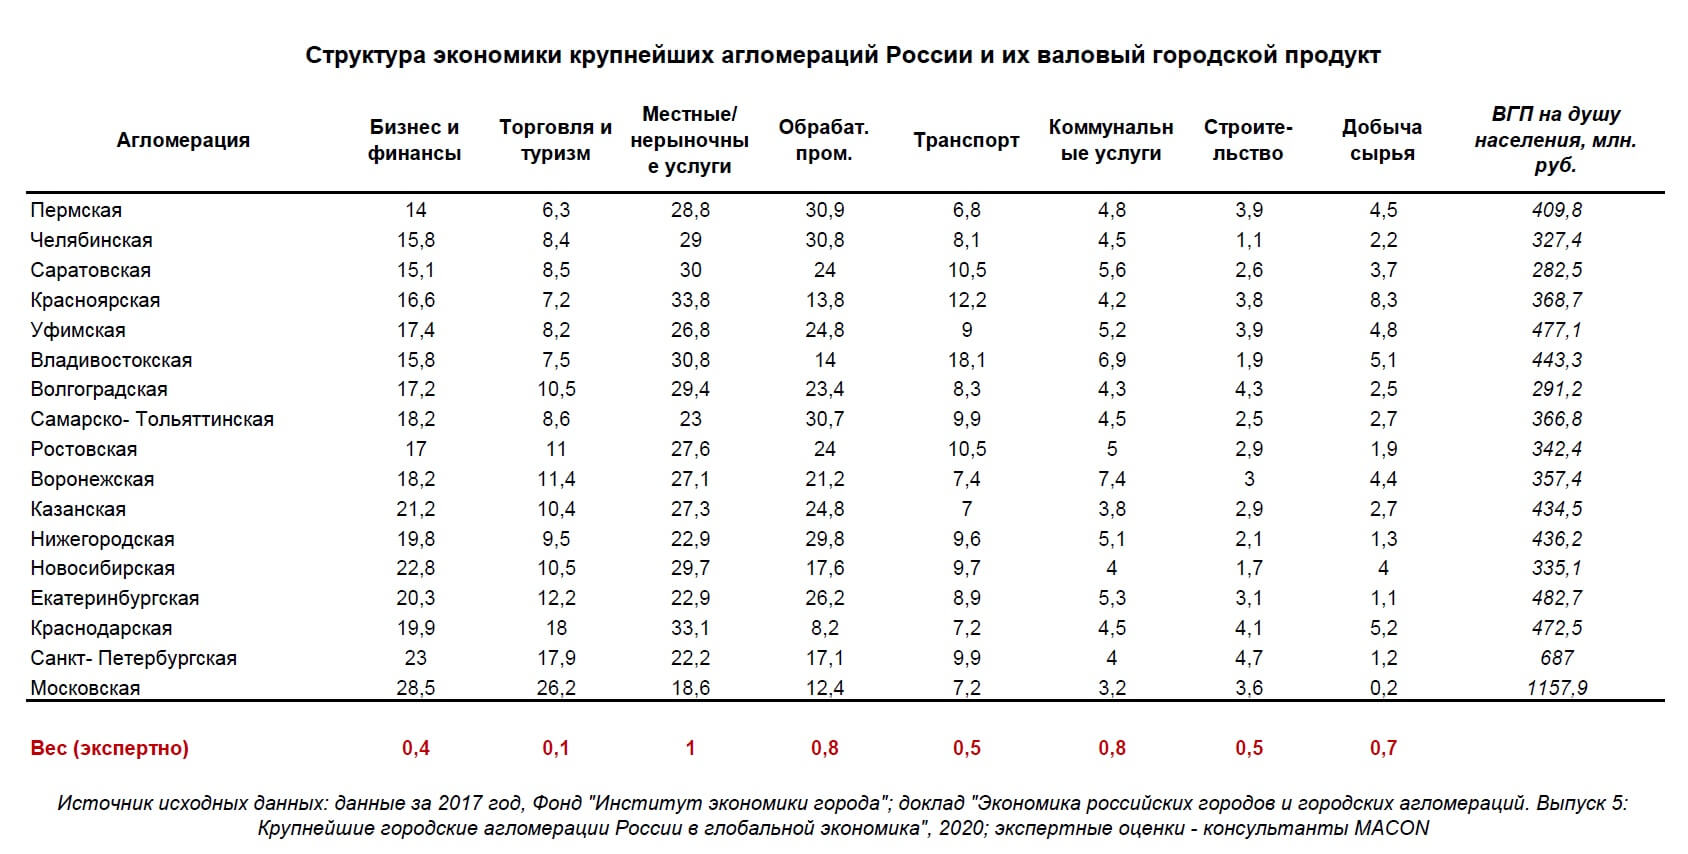 De structuur van de economie en het BBP van Russische agglomeraties